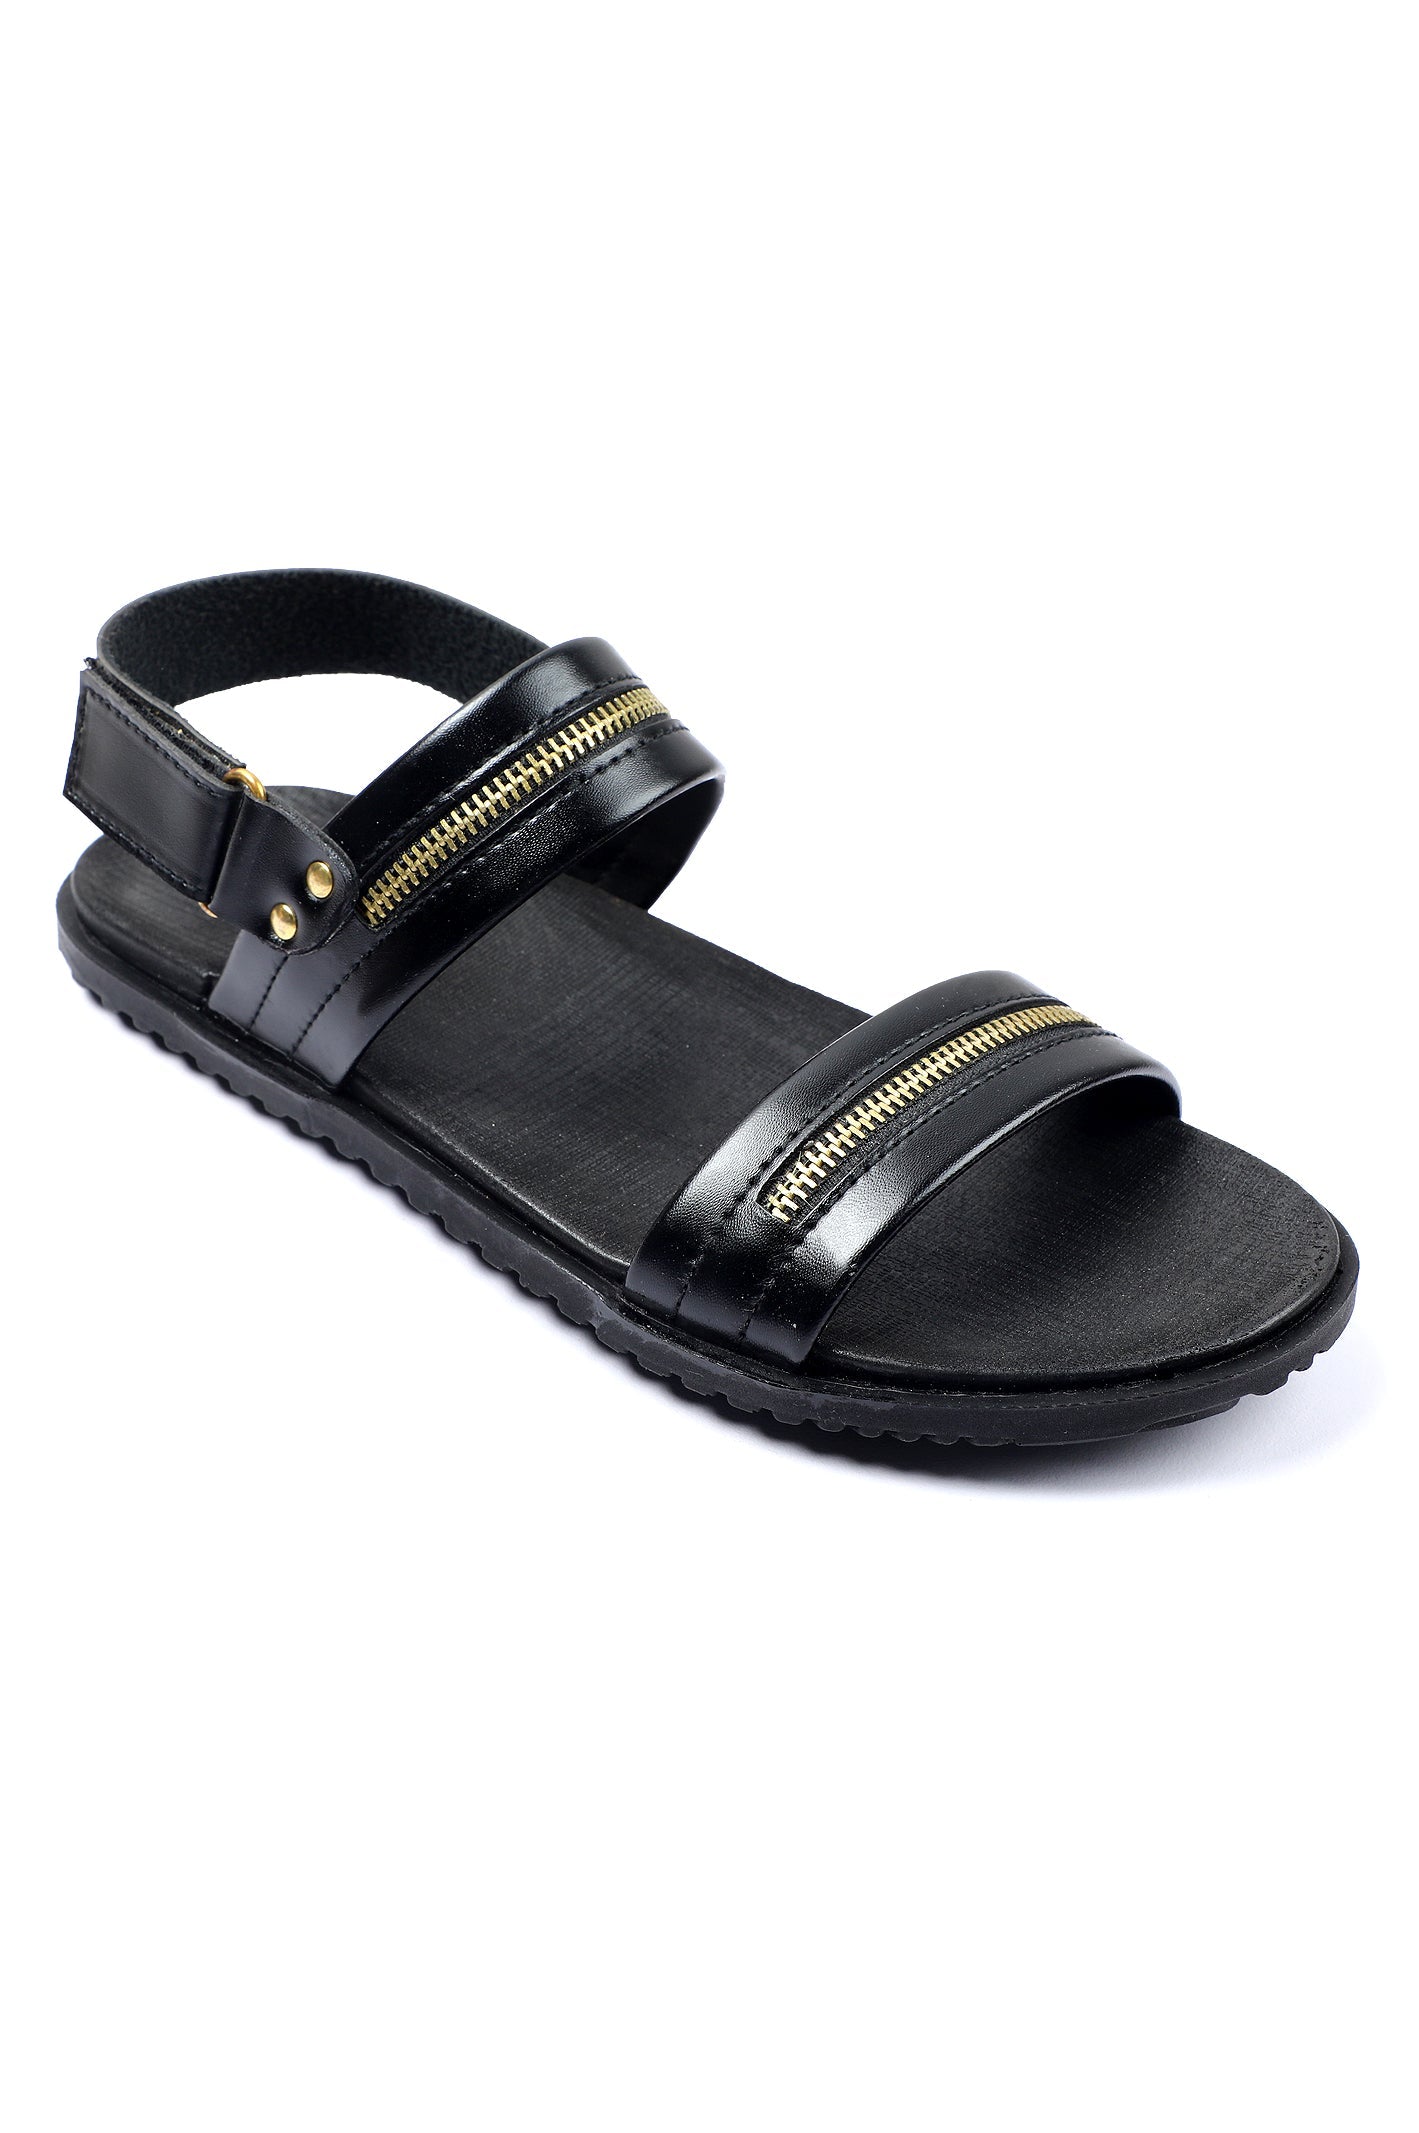 Black Sandal for Men's